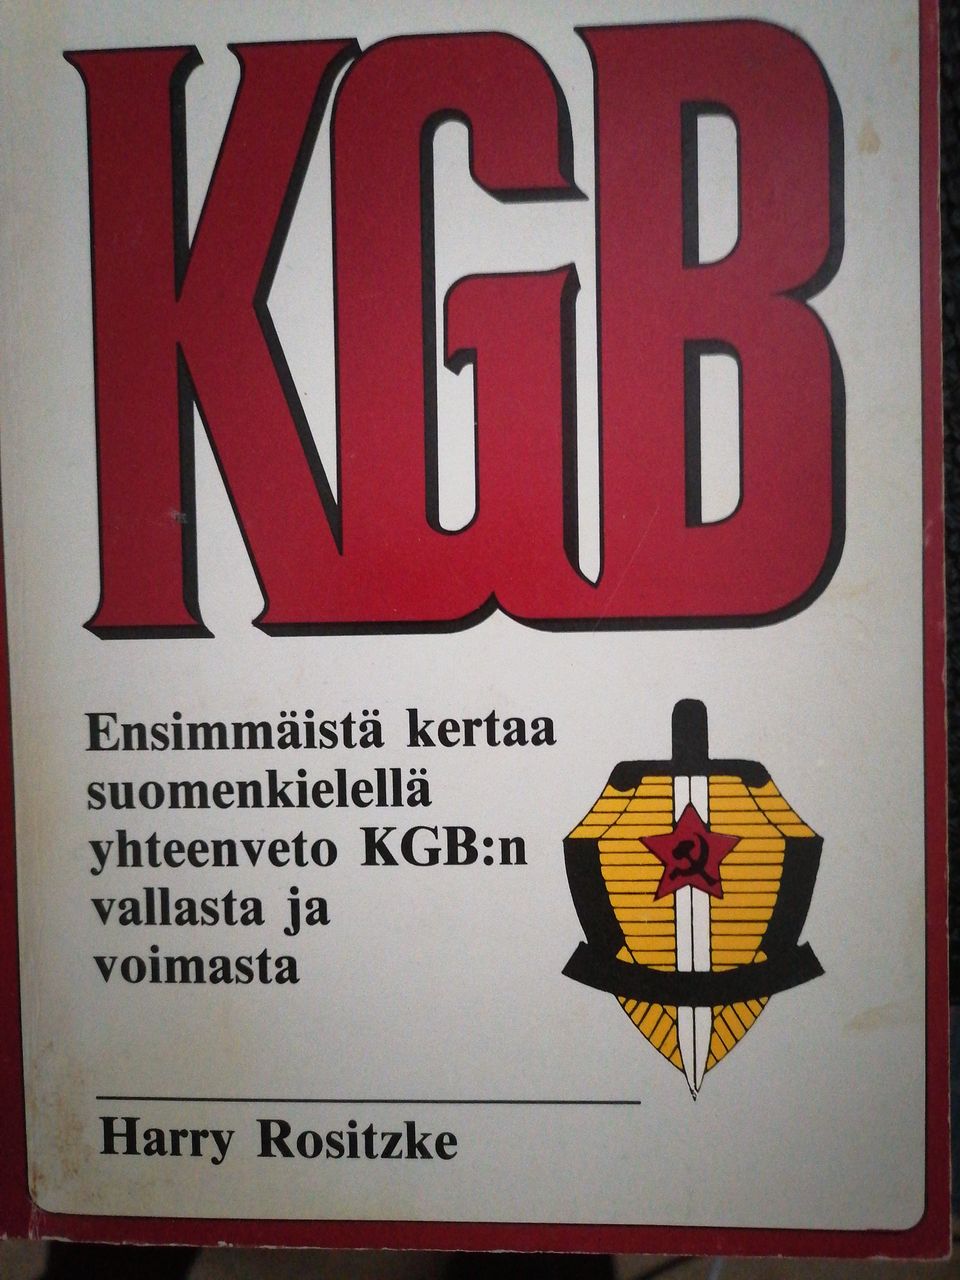 Kgb